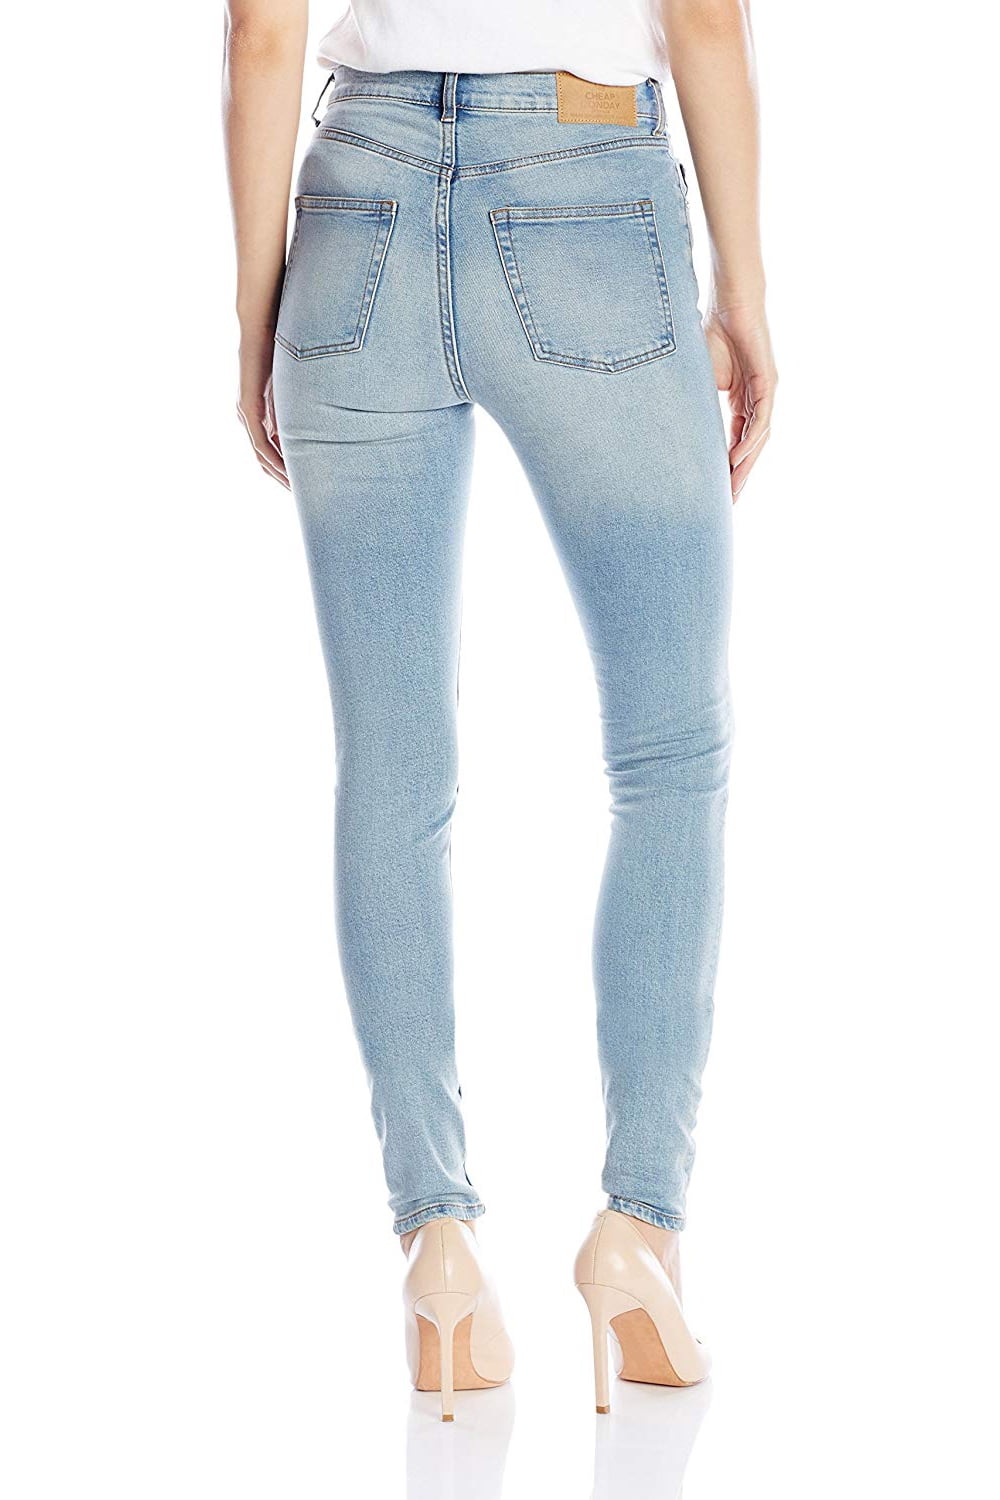 stoel Arabische Sarabo Autorisatie CHEAP MONDAY Women's Second Skin Jeans, Stonewash Blue, 25x32 - Walmart.com